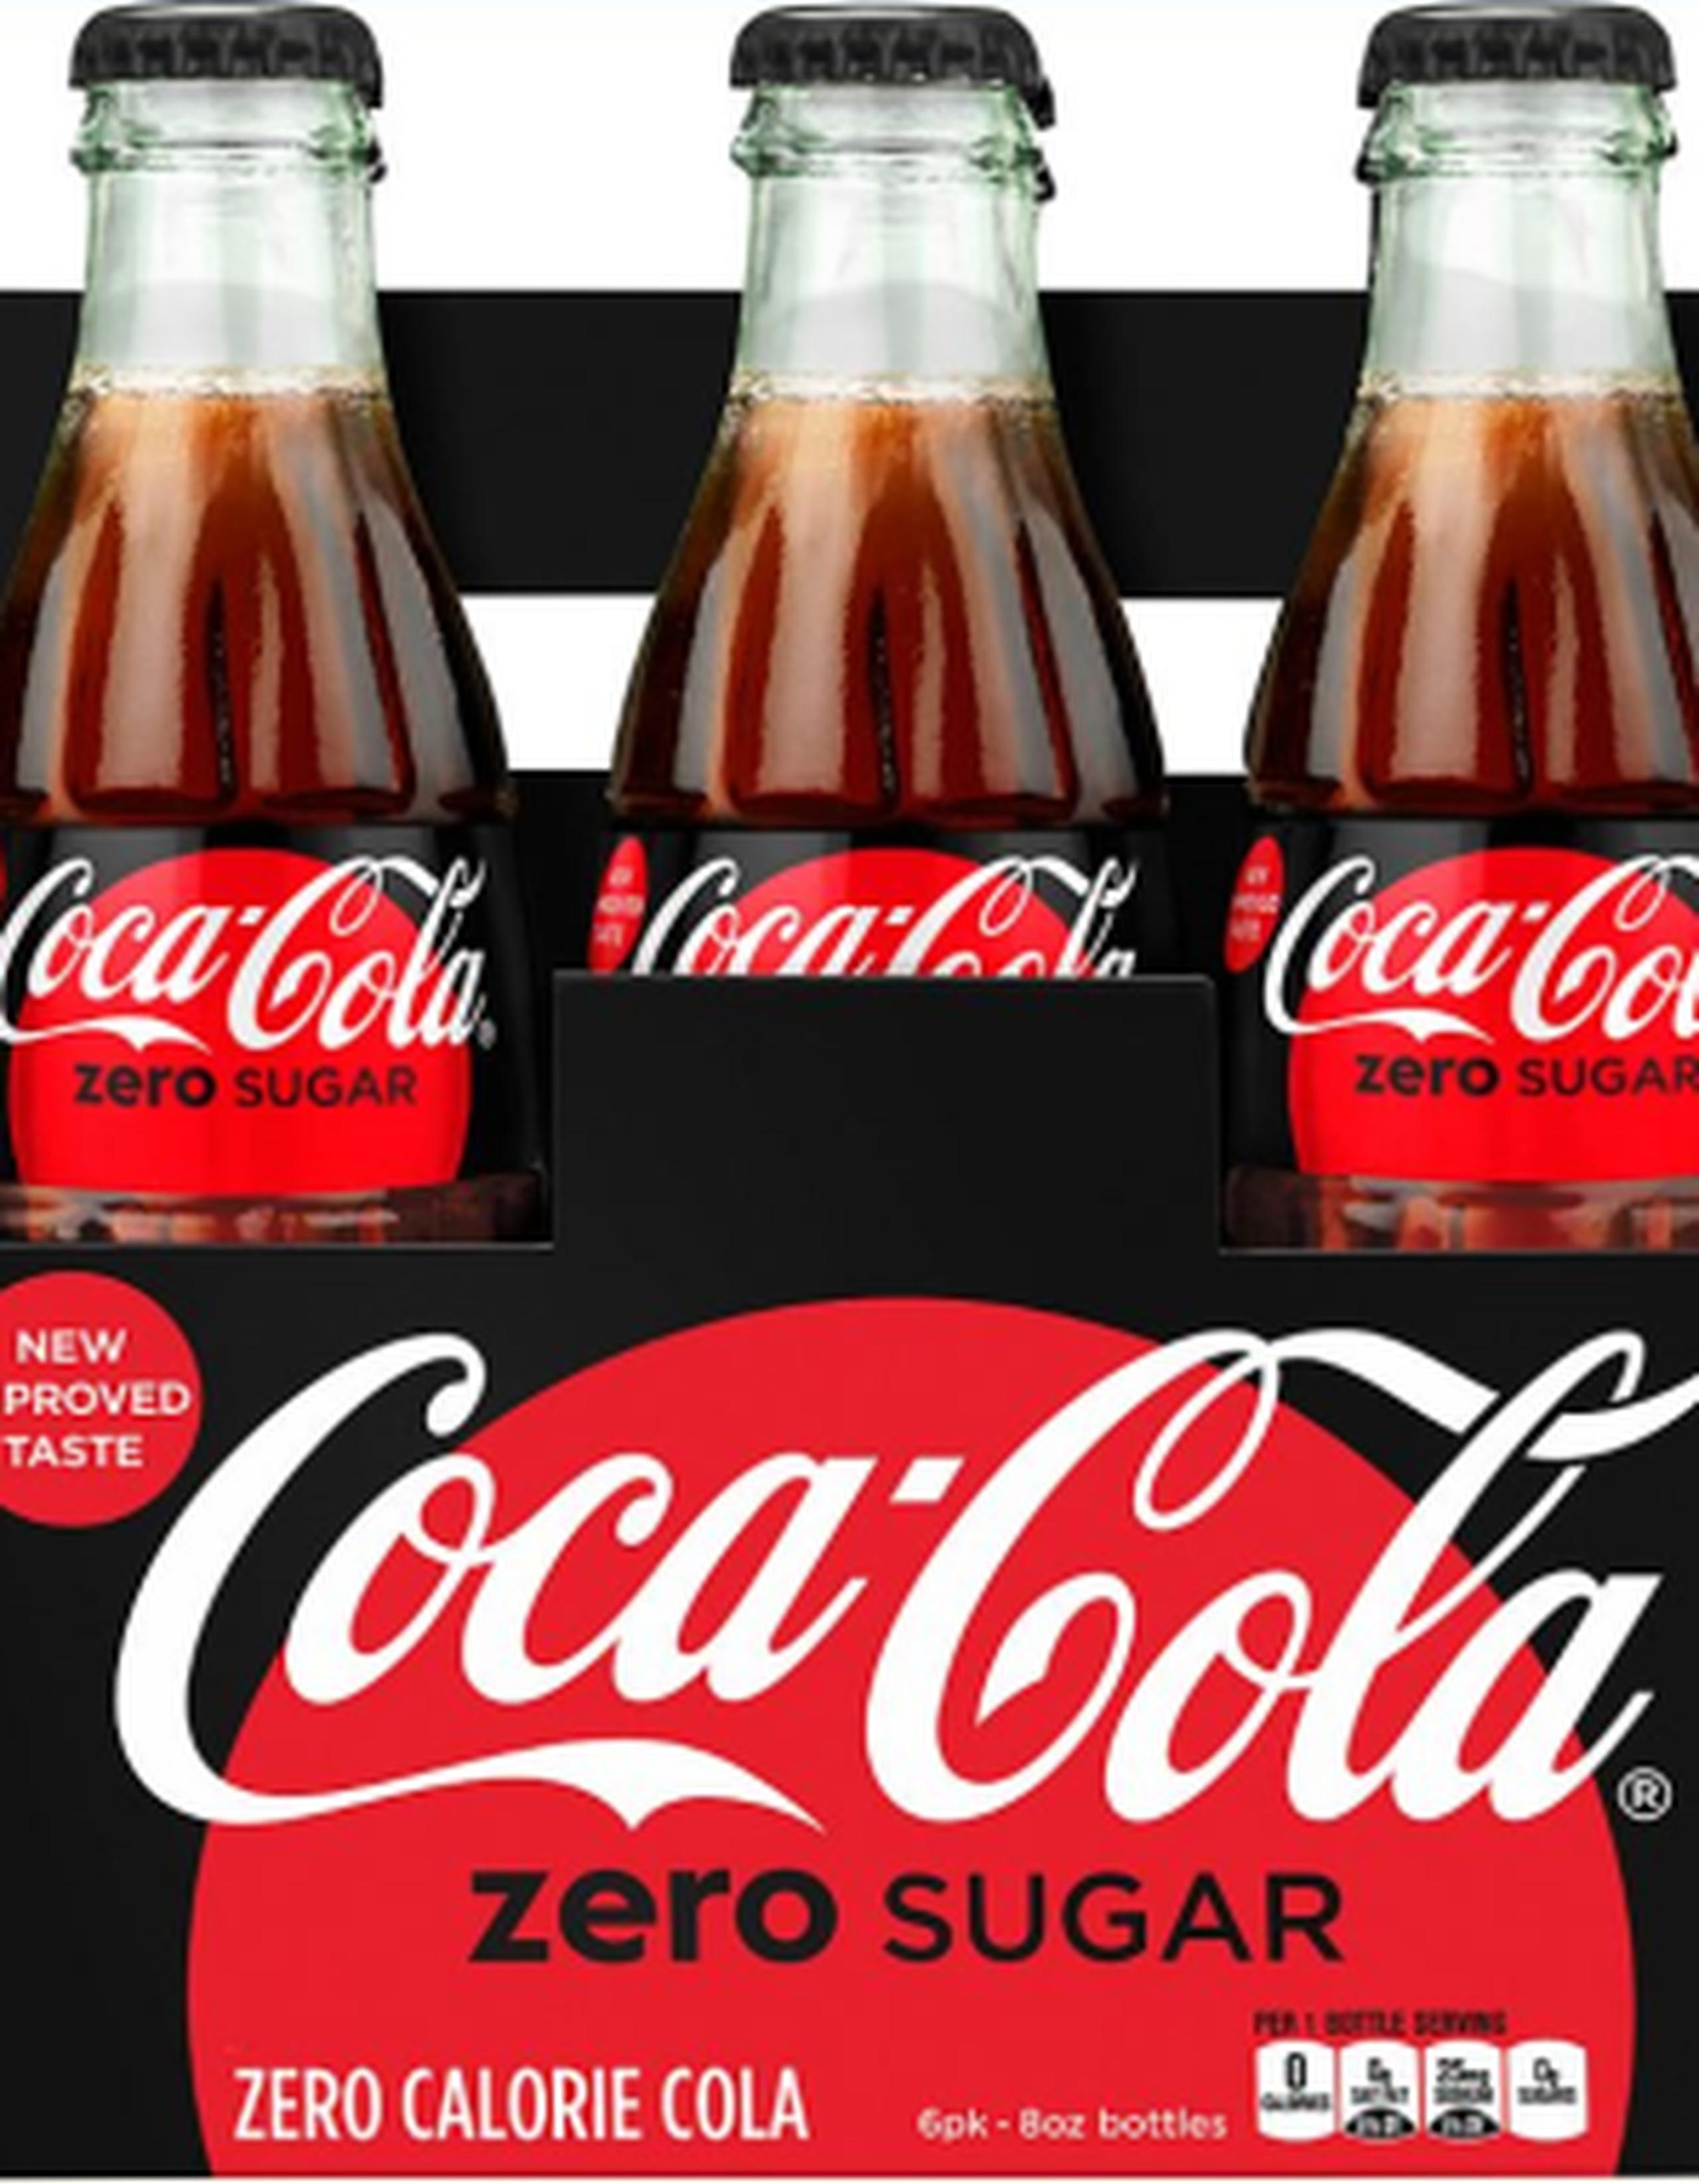 Este tipo de endulzante permitiría a la nueva versión mantener el sabor tradicional de Coca-Cola, pero con menos calorías. (AP)